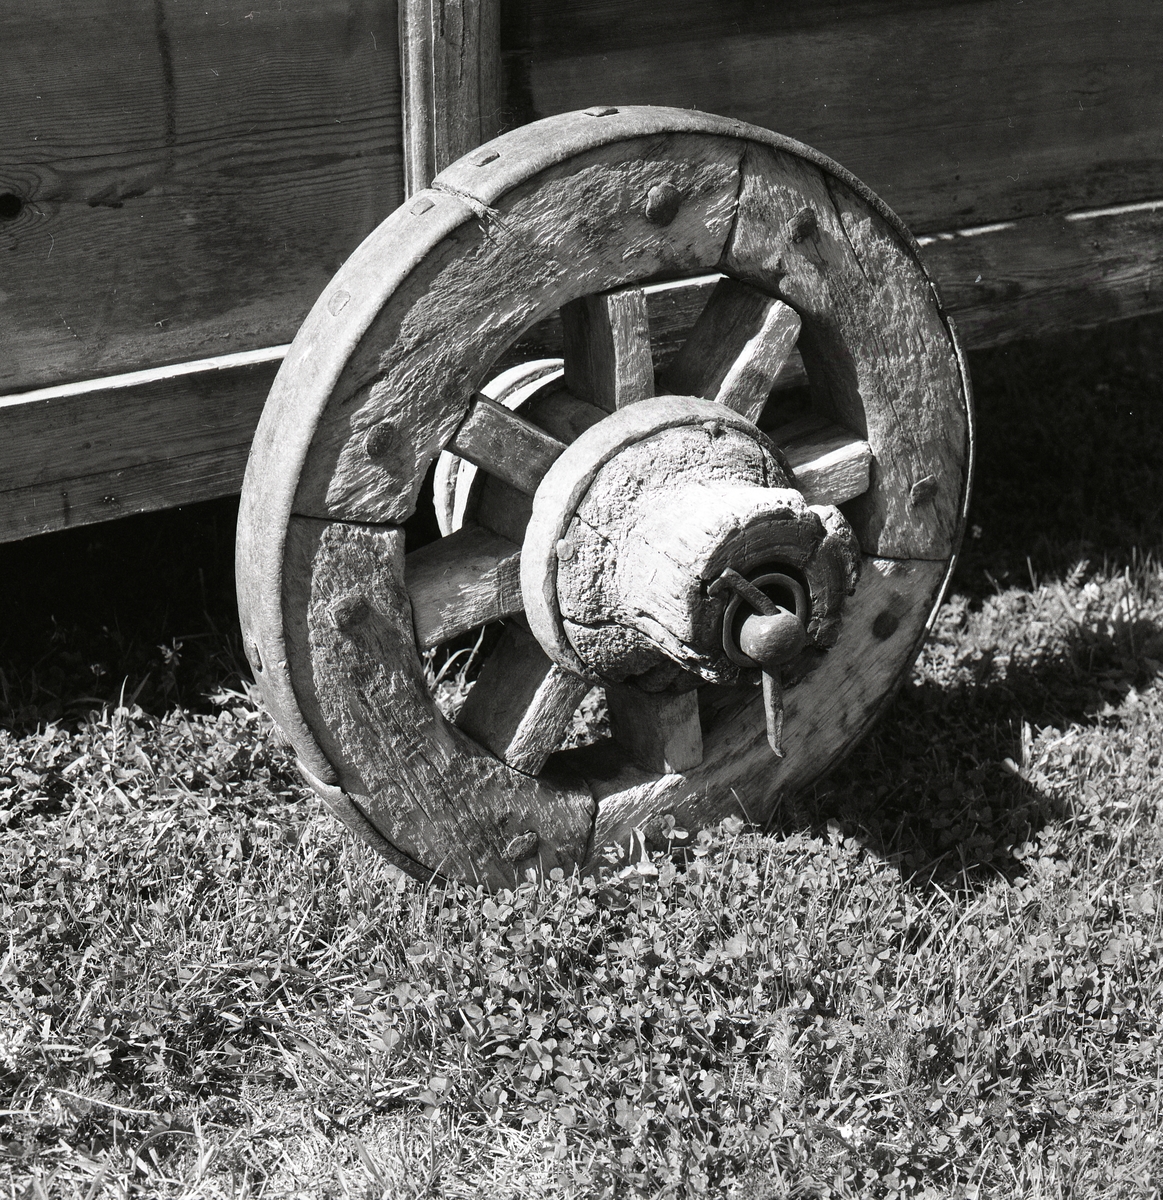 På gräset står ett föremål gjort i trä med ett trähjul på. I hästväg 27 juli 1990.